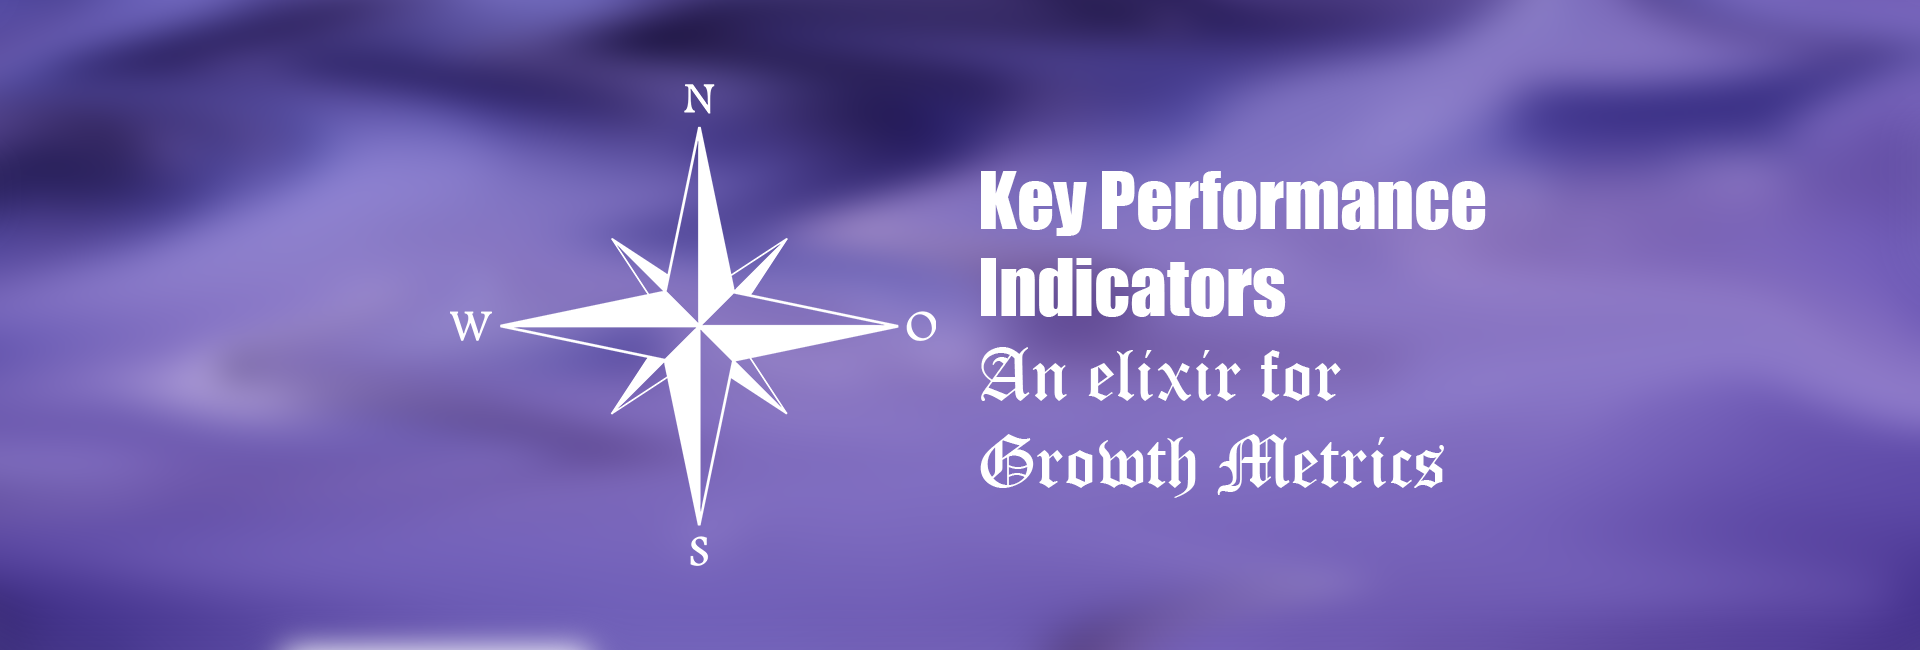 Key Performance Indicators – An Elixir for Growth Metrics